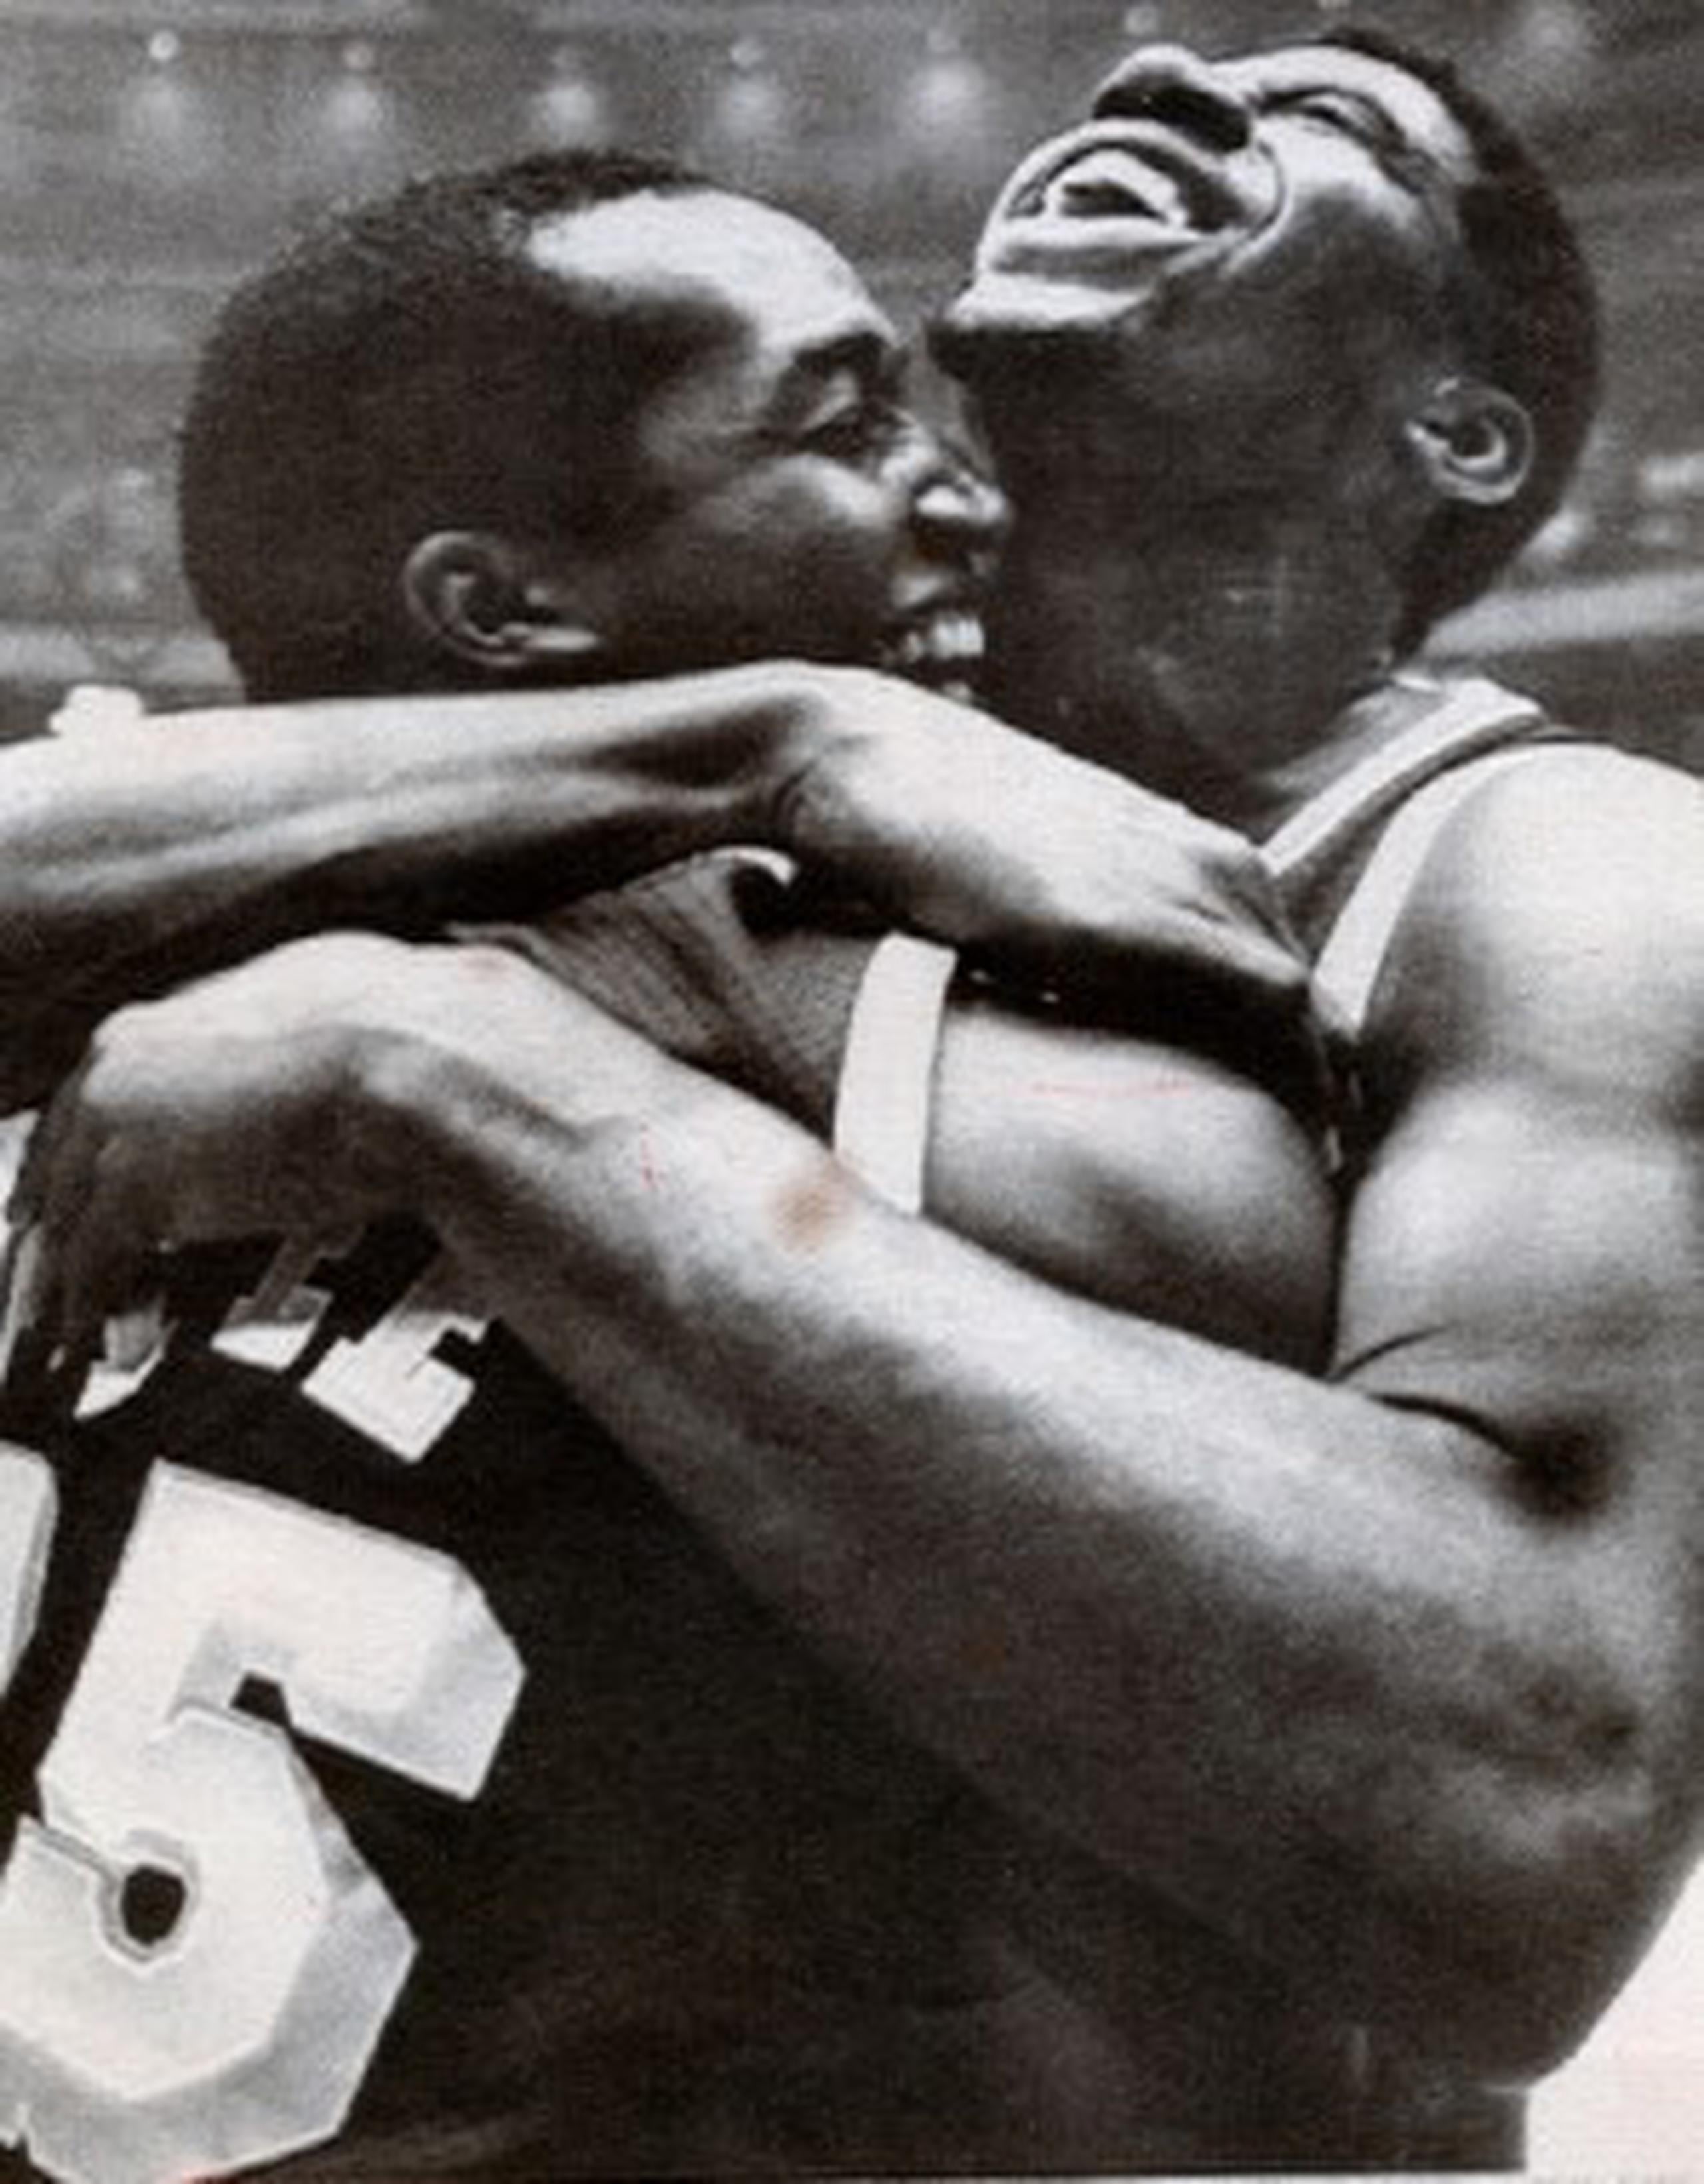 Butch Lee fue el primer puertorriqueño en ganar un anillo de la NBA al pertenecer a la edición campeona de los Lakers de 1980. En la imagen, Lee abraza a Magic Johnson luego de conquistar el cetro. (Archivo).